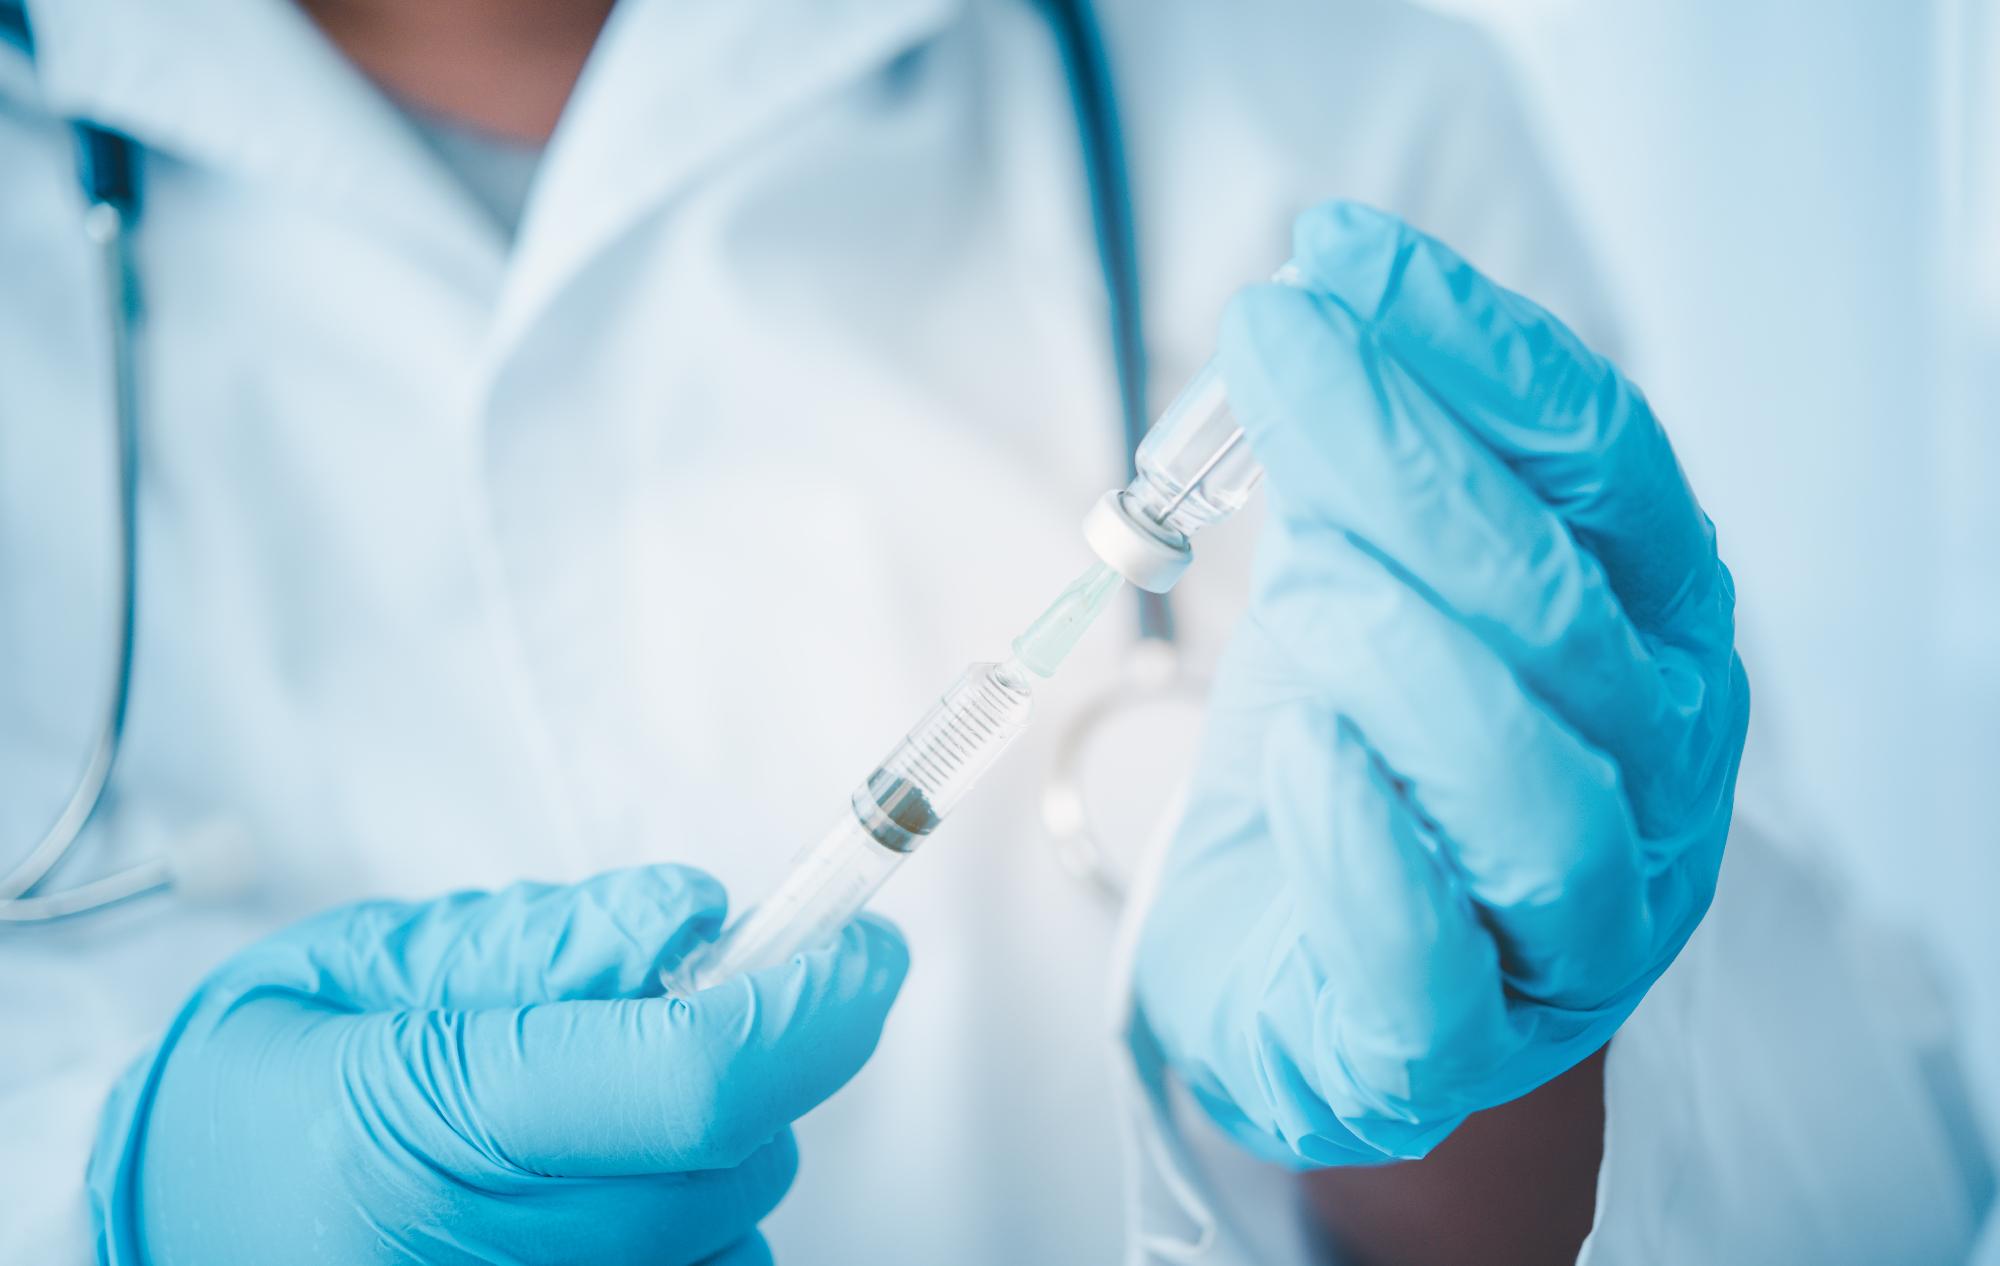 Az FDA javasolja, hogy engedélyezzék az 5 és 11 év közötti gyermekek beoltását